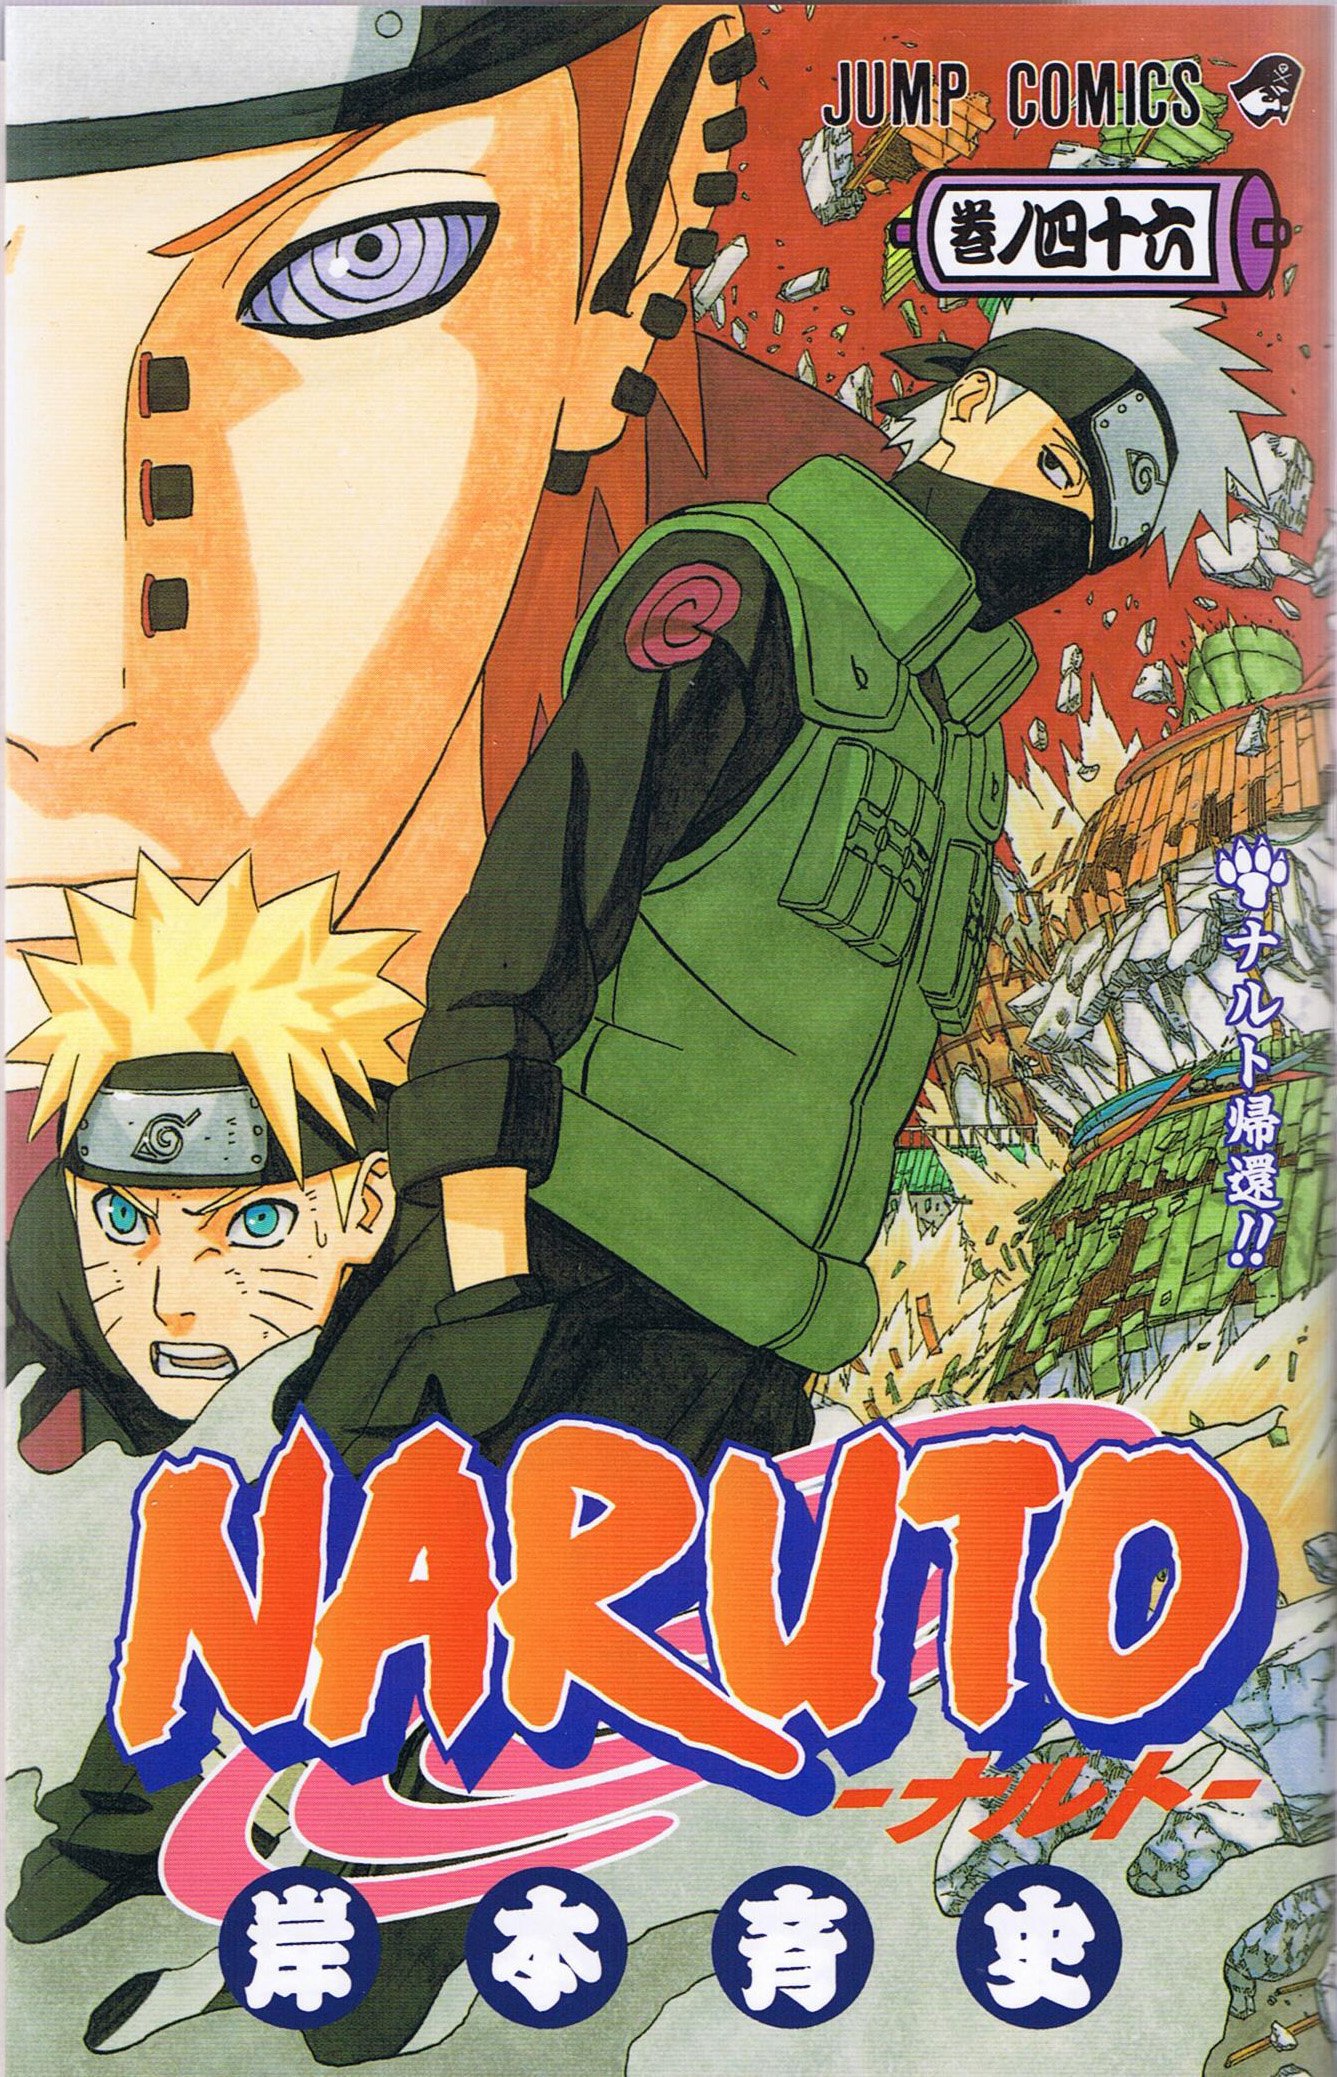 Naruto Manga Covers